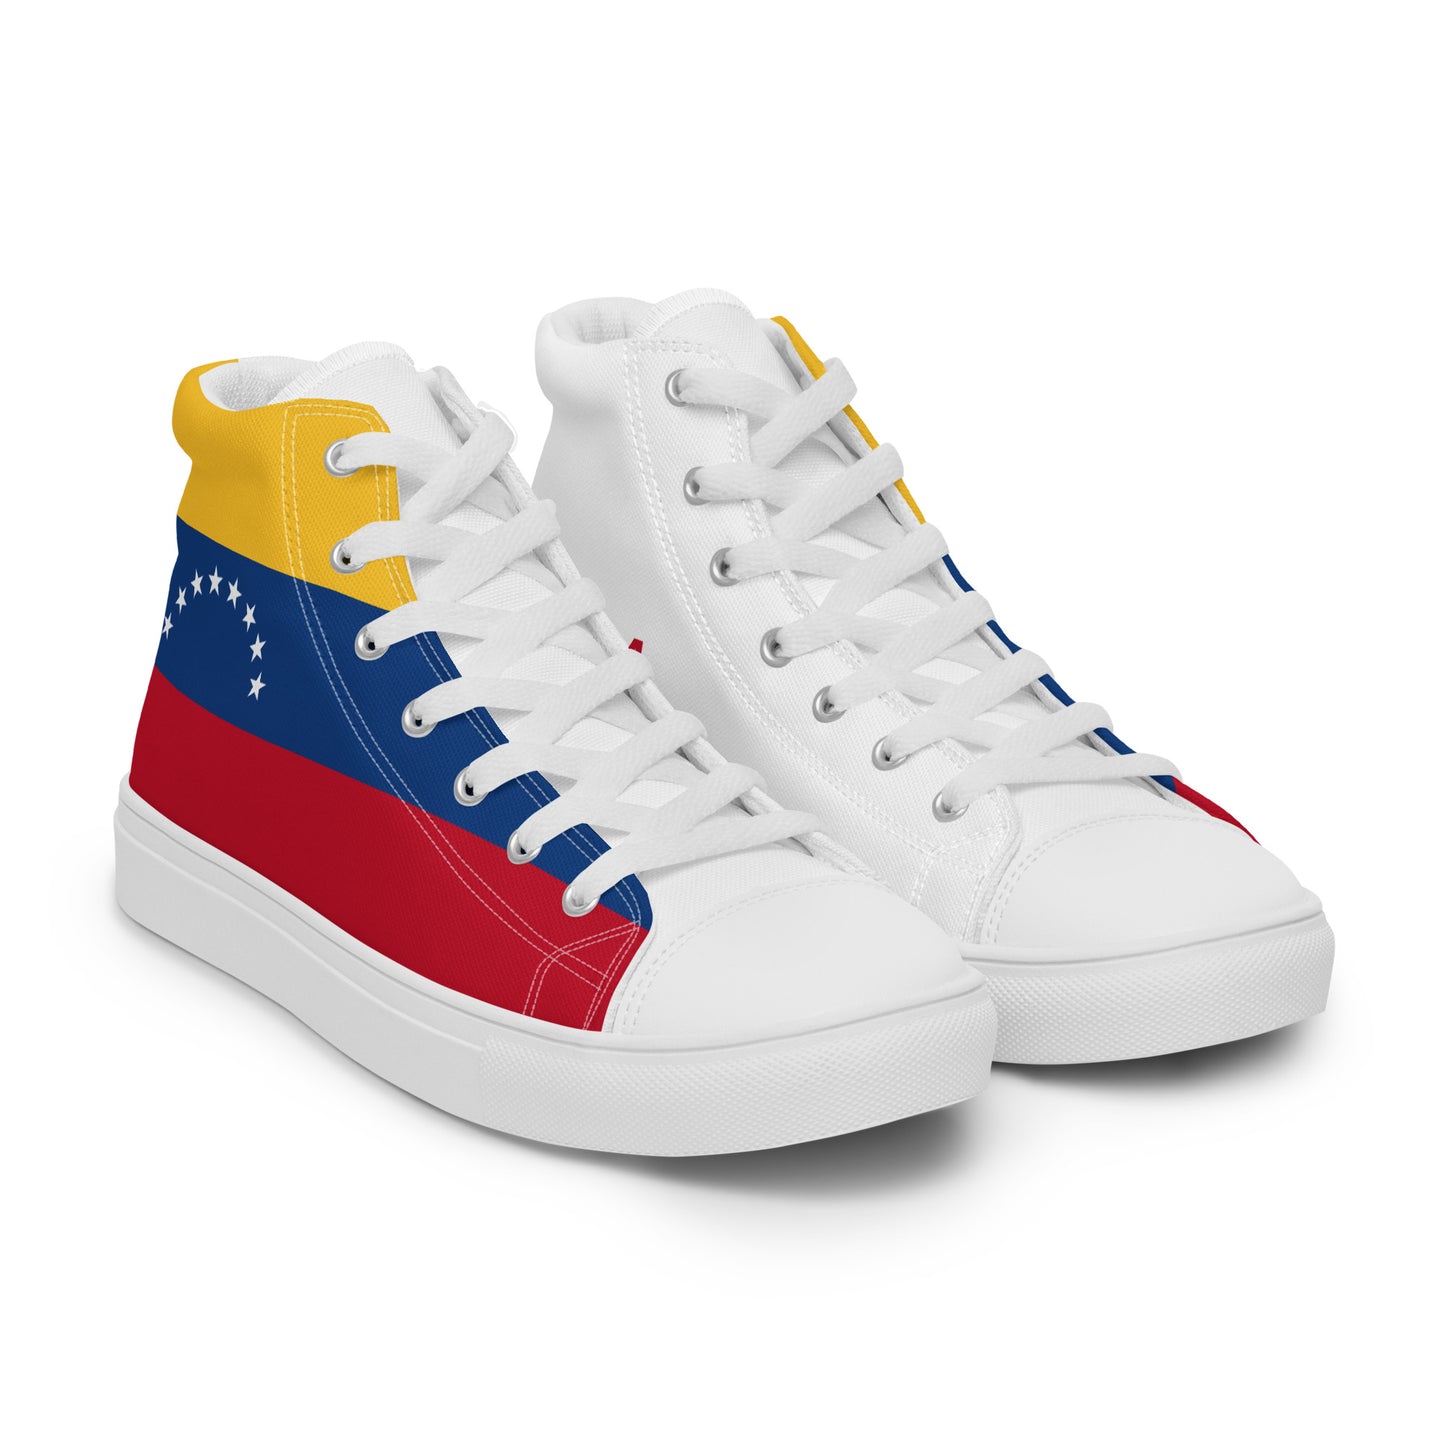 Venezuela - Women - Bandera - High top shoes